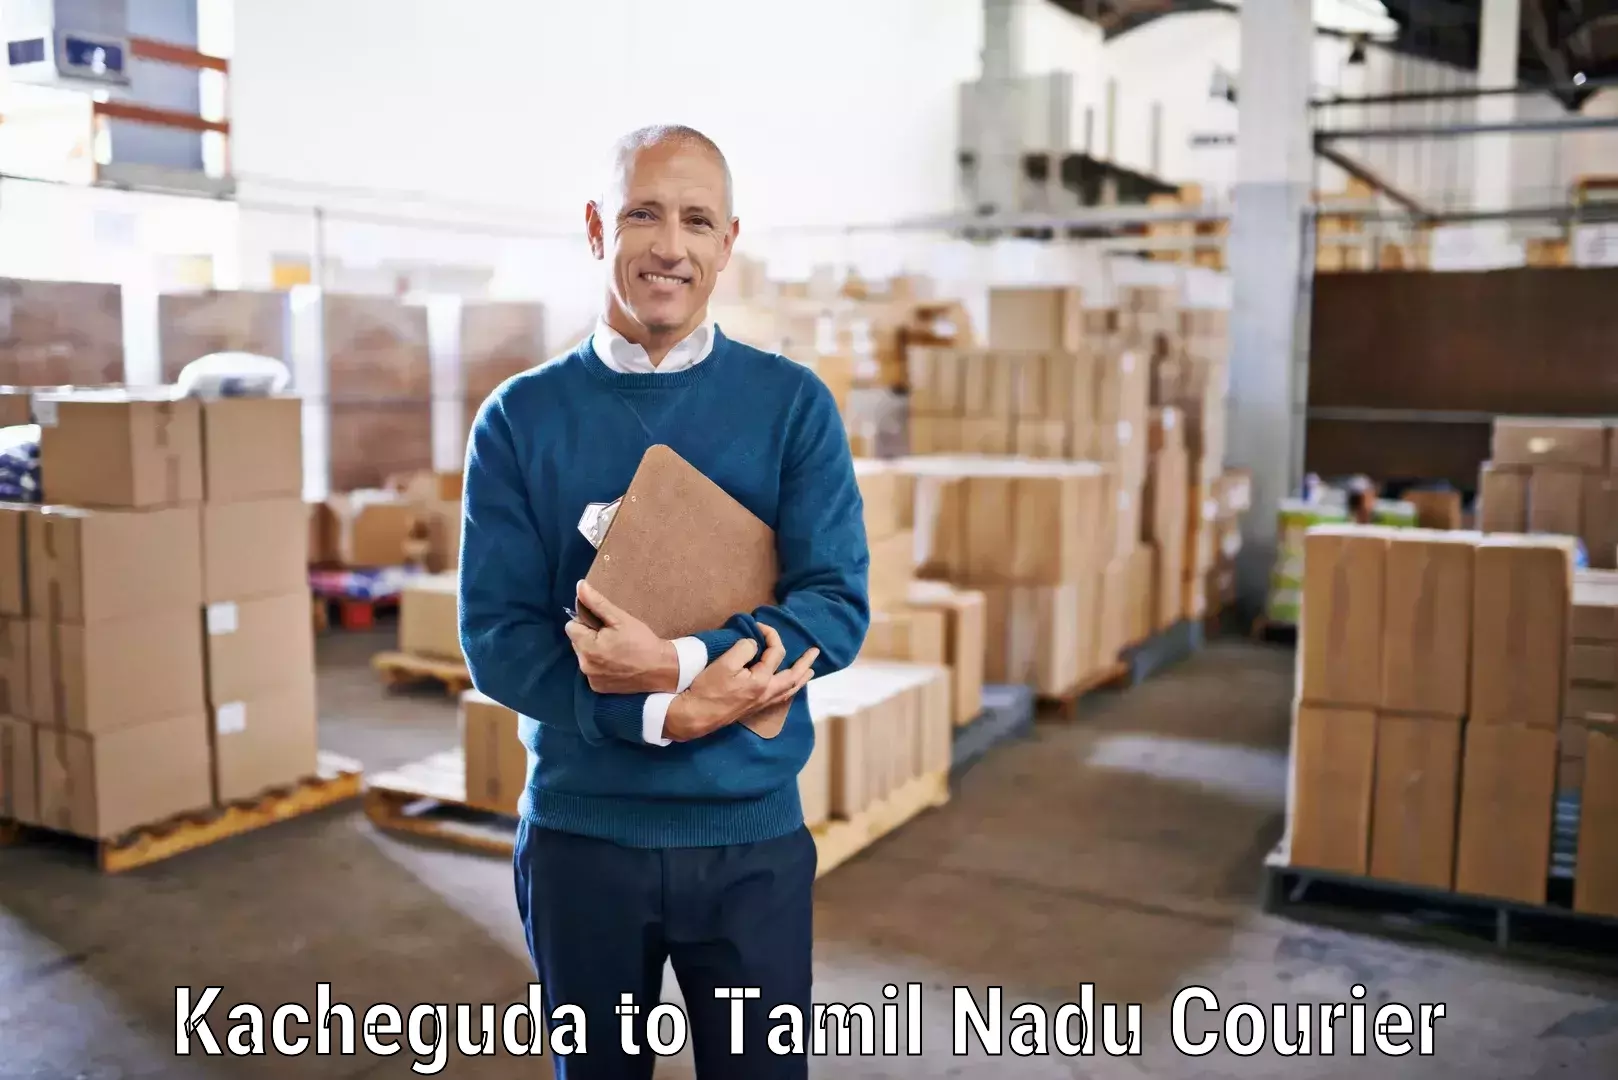 Express courier capabilities Kacheguda to Maharajapuram